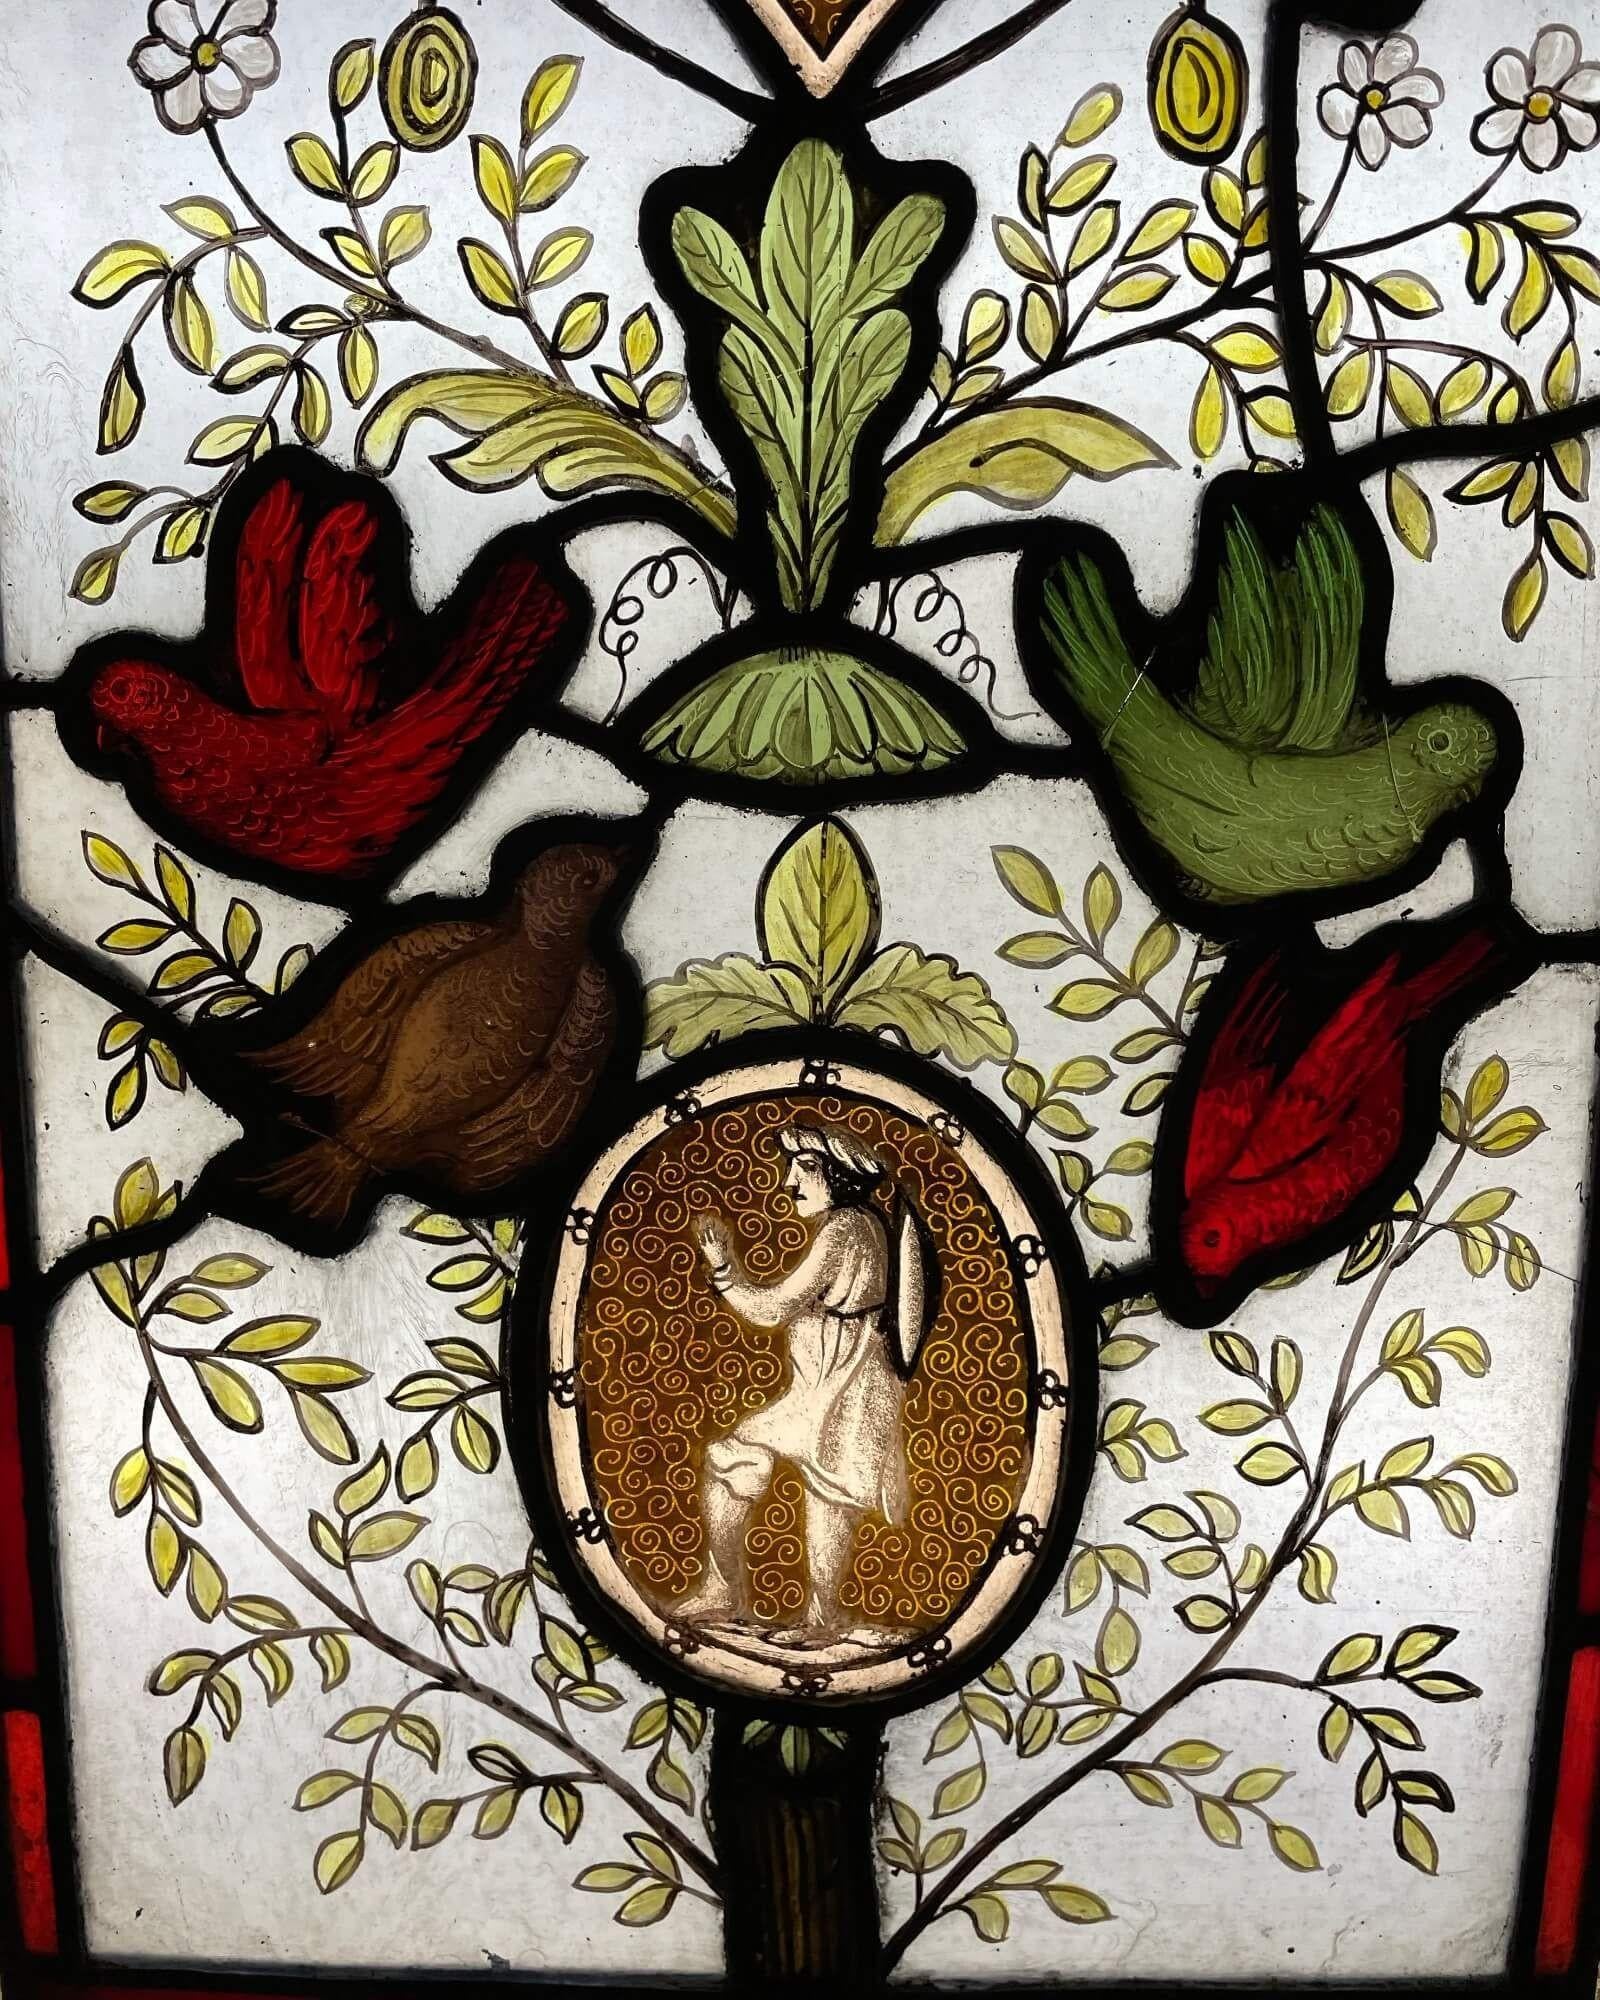 Magnifique vitrail de l'époque victorienne représentant une scène de style arbre de vie. Nous vendons également deux autres panneaux dans un thème similaire.

Datant d'environ 1880, ce vitrail ancien est immergé dans la couleur et l'intrigue. Il